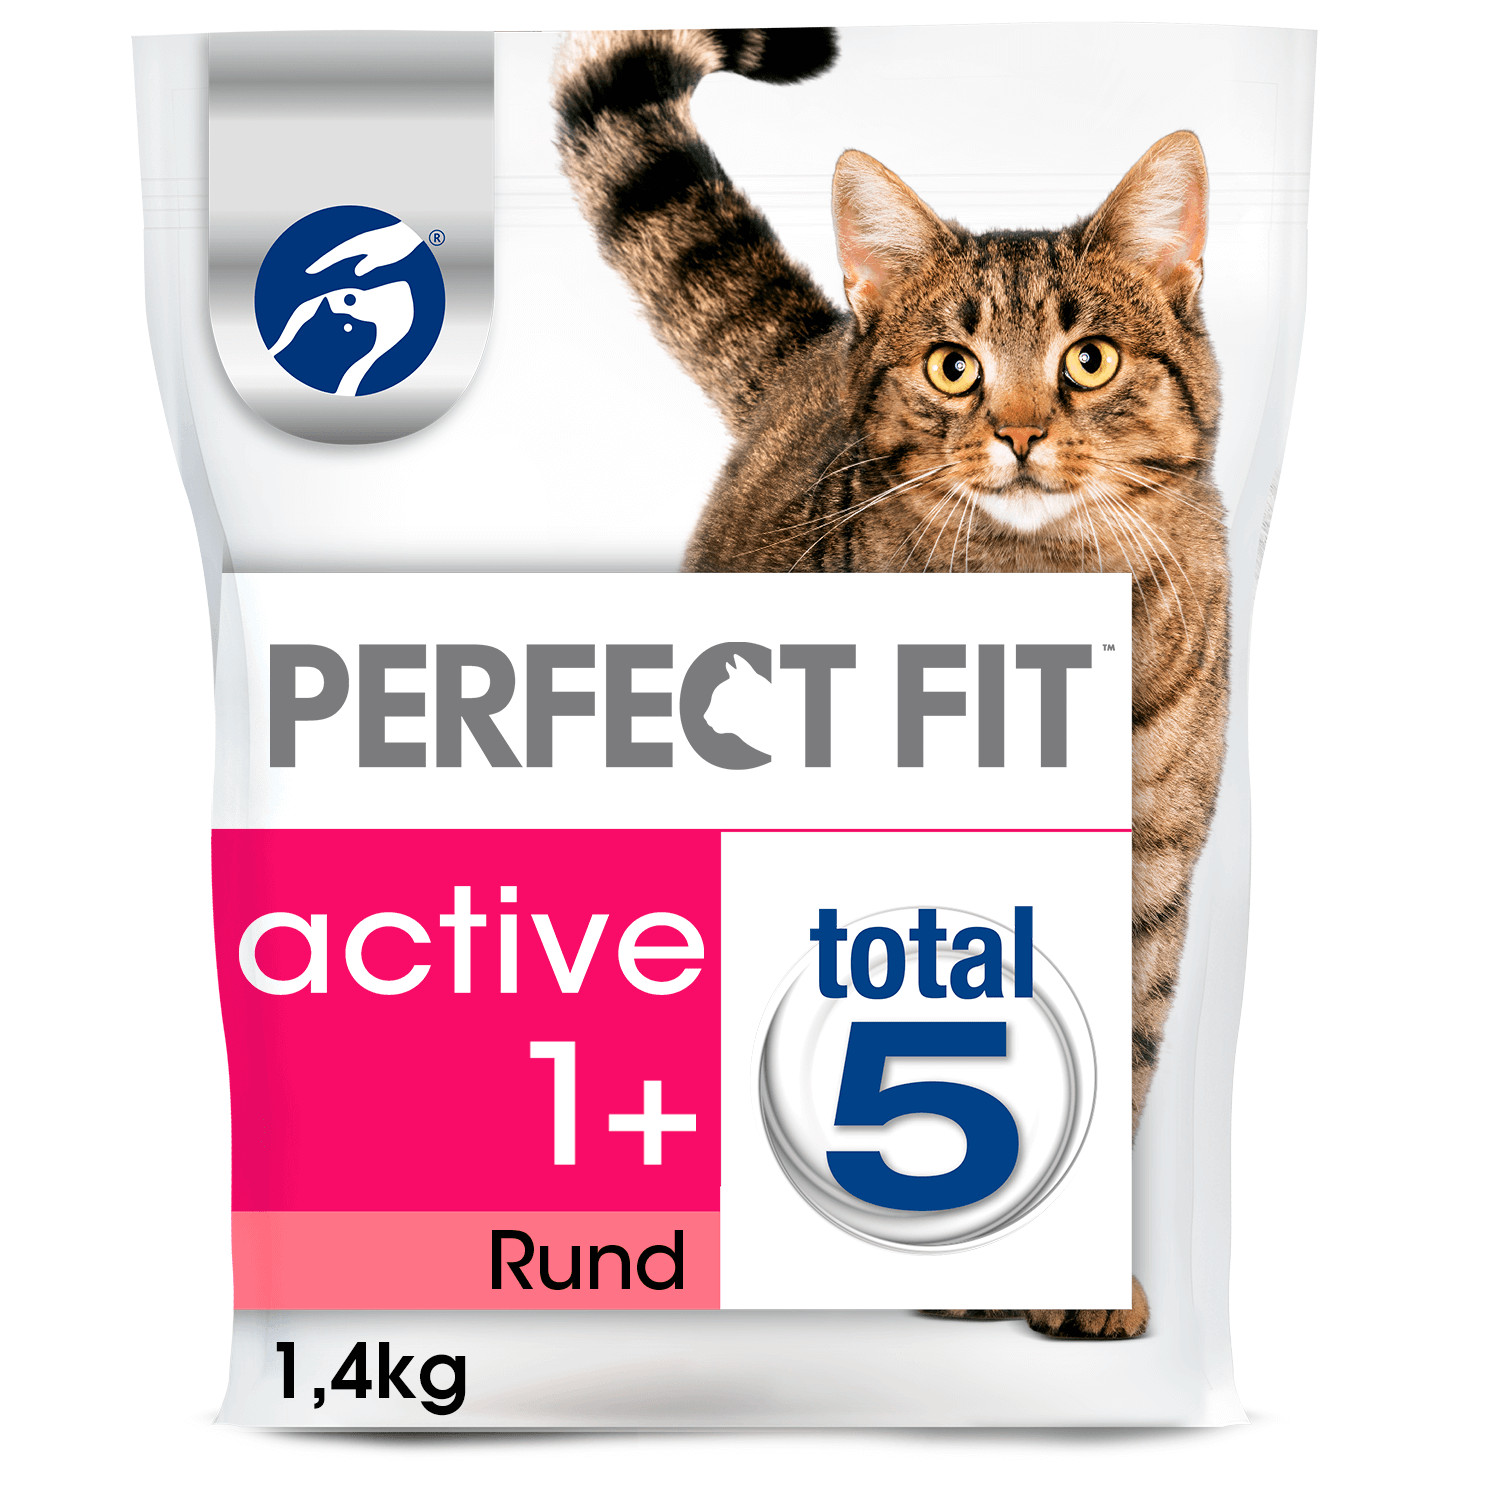 Perfect Fit Active 1+ met rund kattenvoer